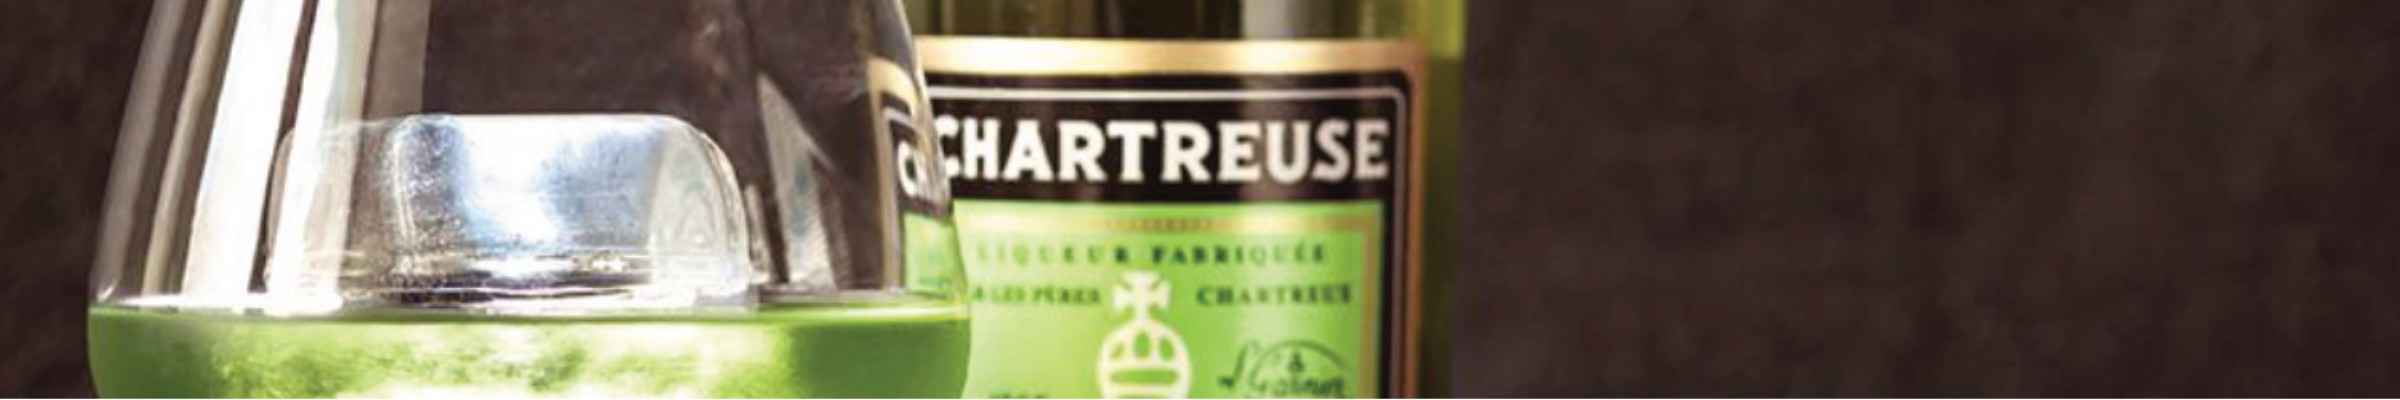 Chartreuse : La sélection de Conroy Vins et Spiritueux !